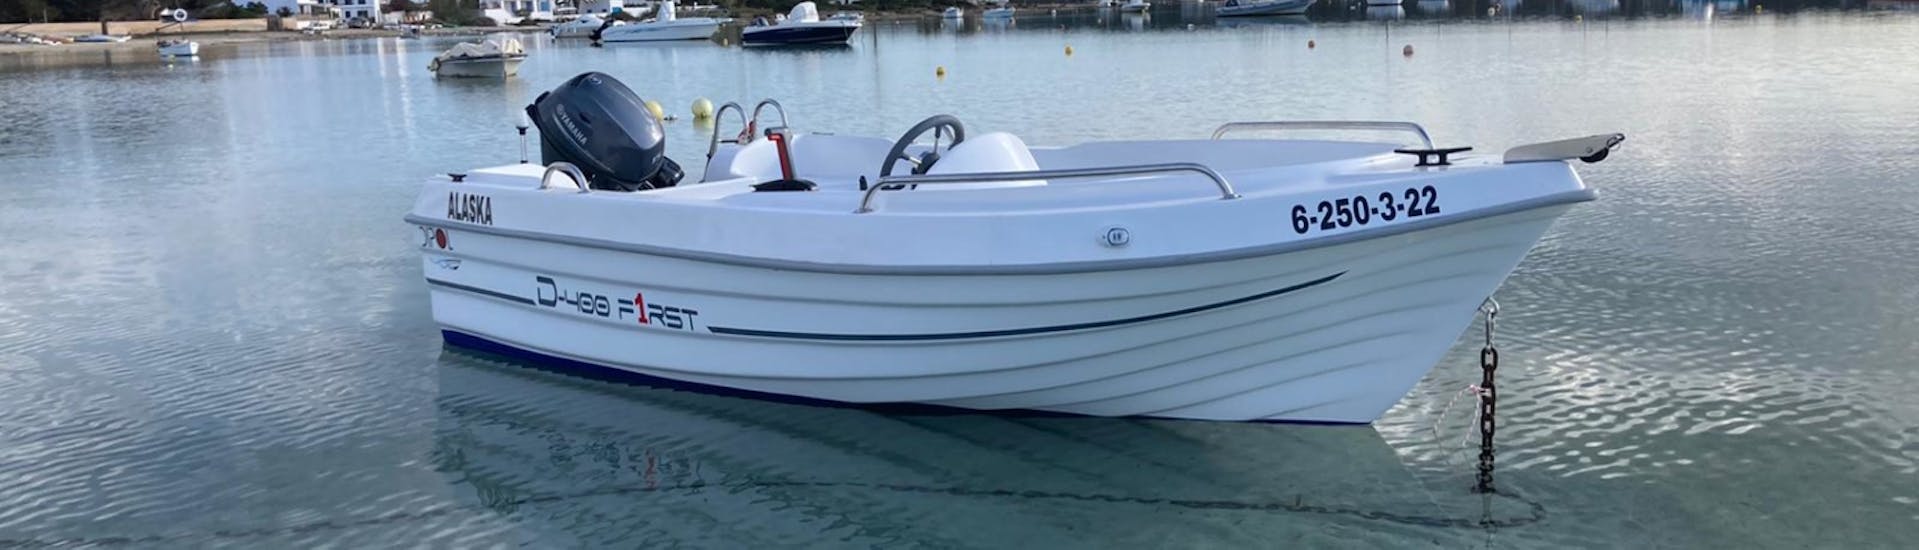 Ein Boot zu mieten ohne Lizenz in Formentera für bis zu 4 Personen mit Barco Rent Formentera.